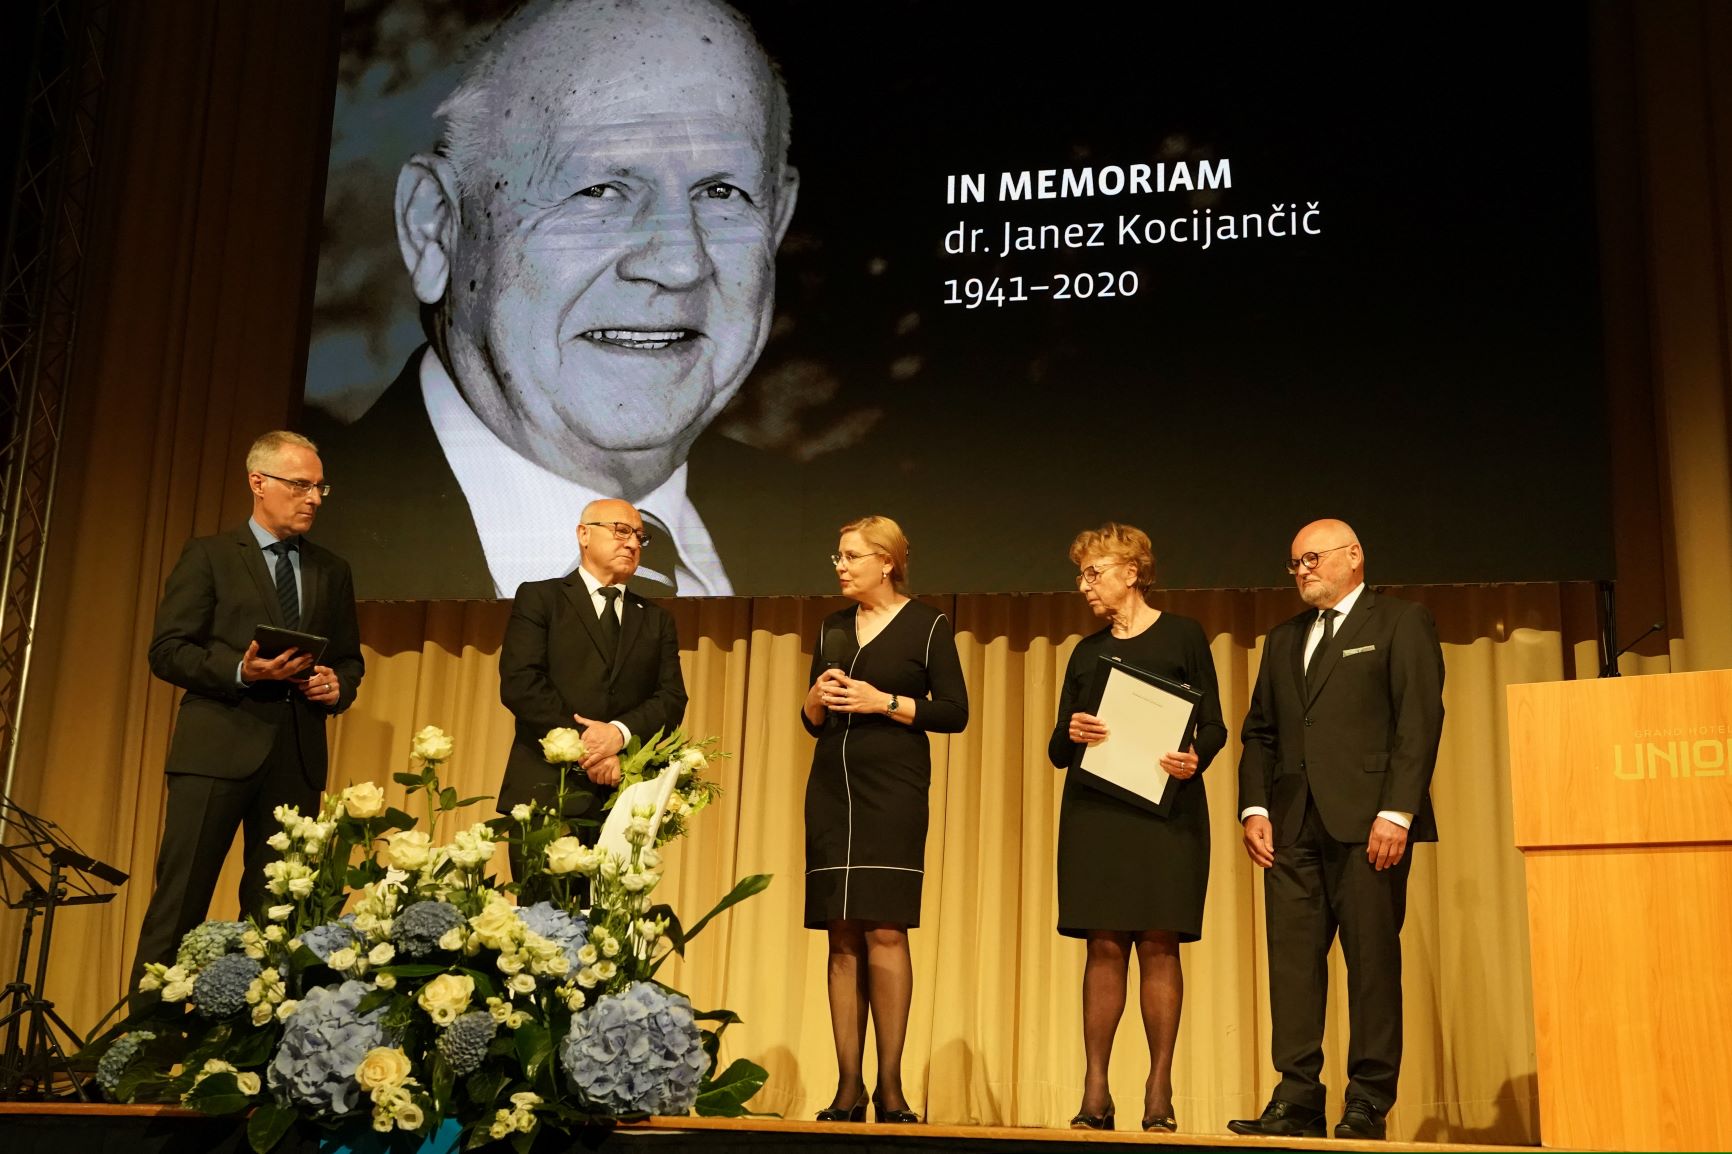 Žalna seja za pokojnim dr. Janezom Kocijančičem